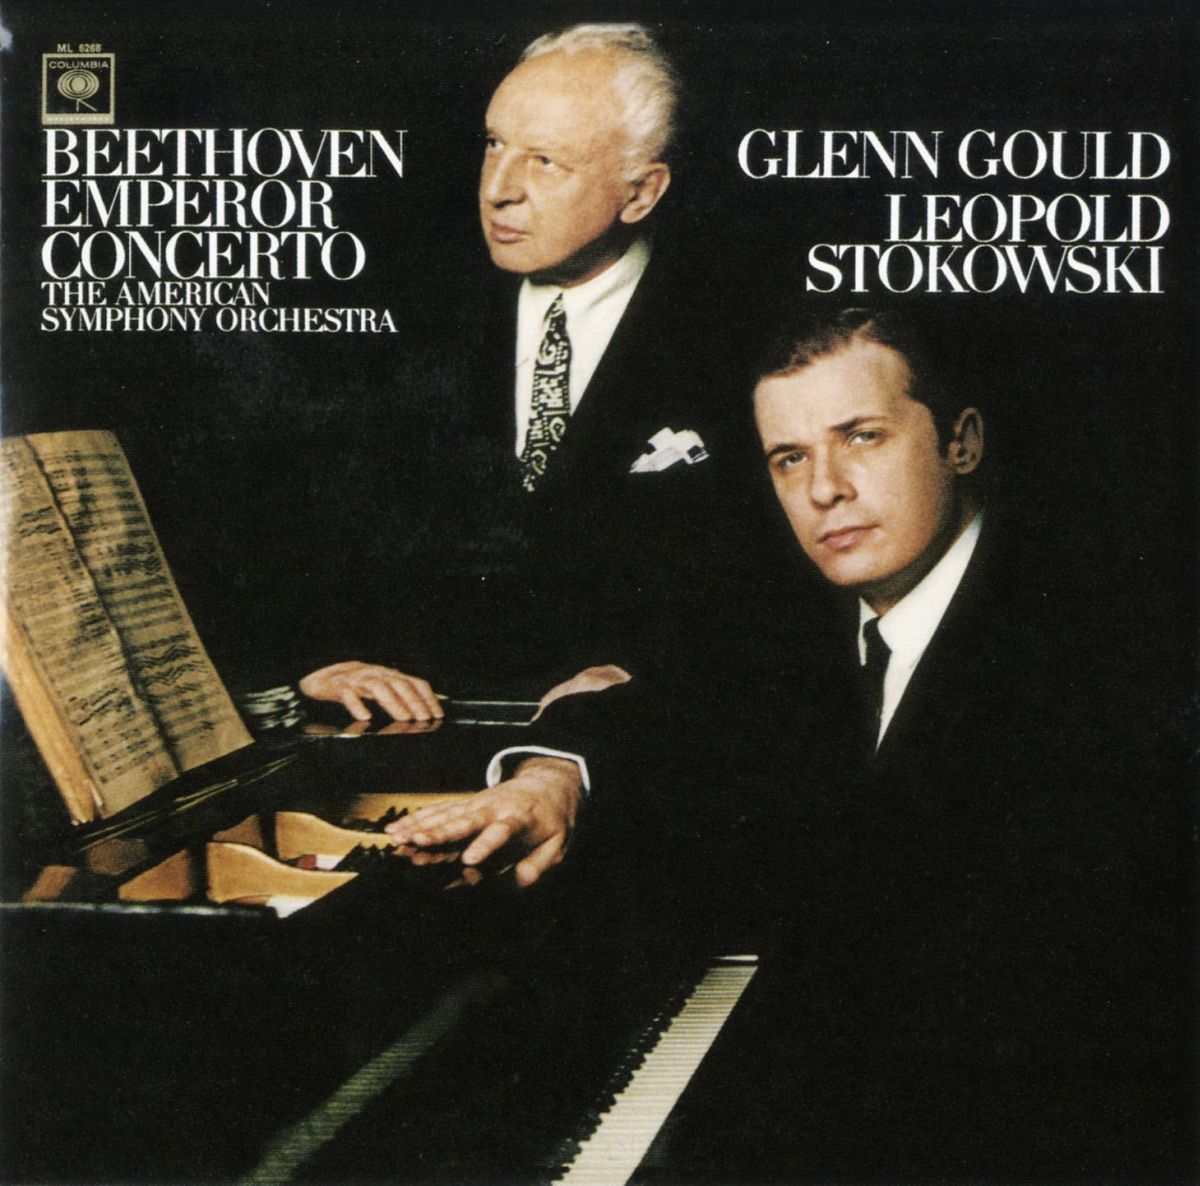 ベートーヴェン:ピアノ協奏曲第5番「皇帝」 グレン グールド